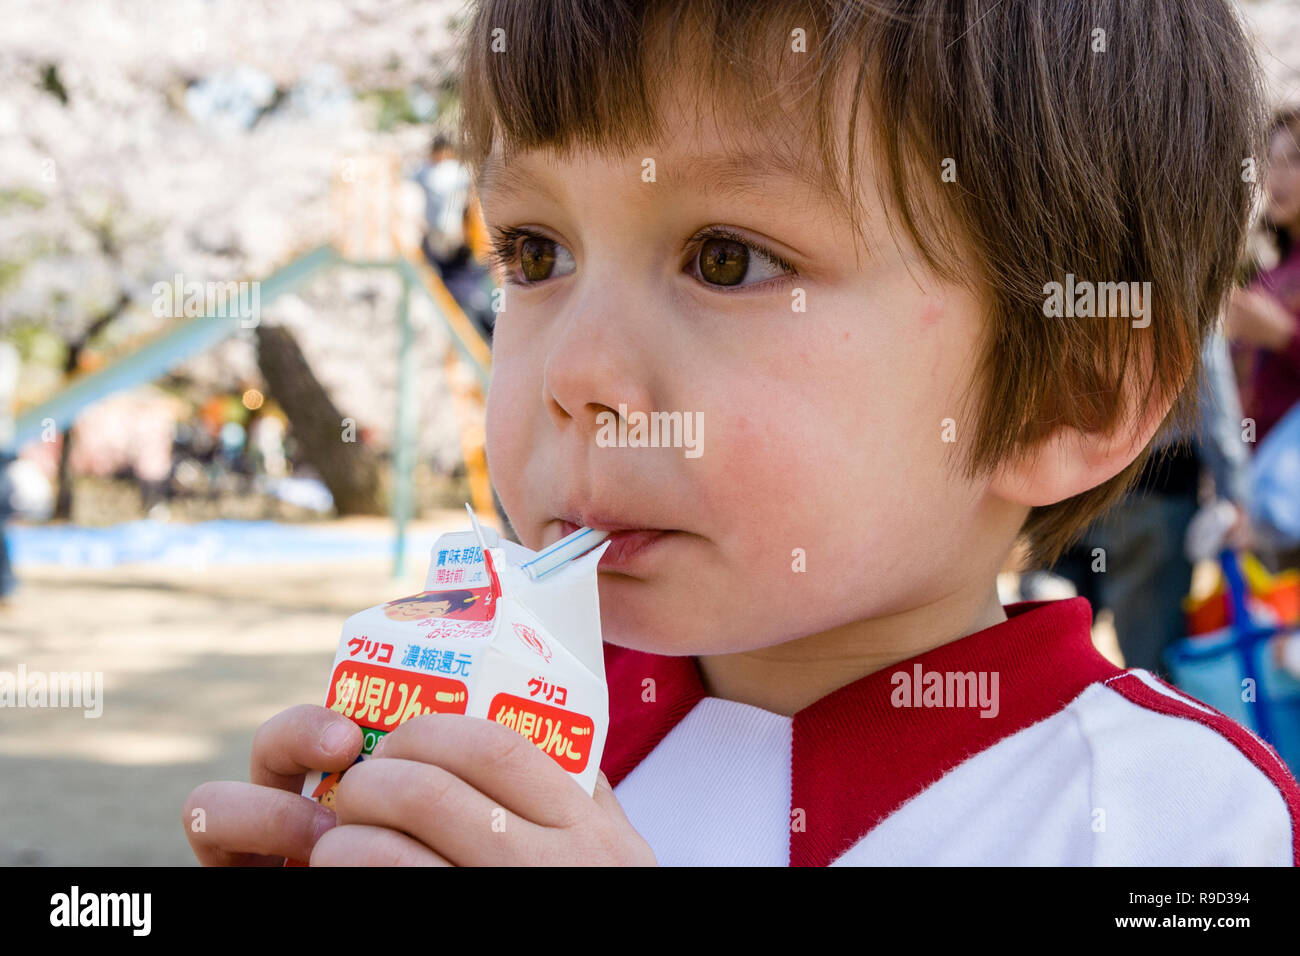 Japanese-Caucasian enfant, garçon, 4-5 ans, mixed race, la tête et les épaules, à l'extérieur. Tenant un petit carton de fruits et d'alcool en raison de la paille. Banque D'Images